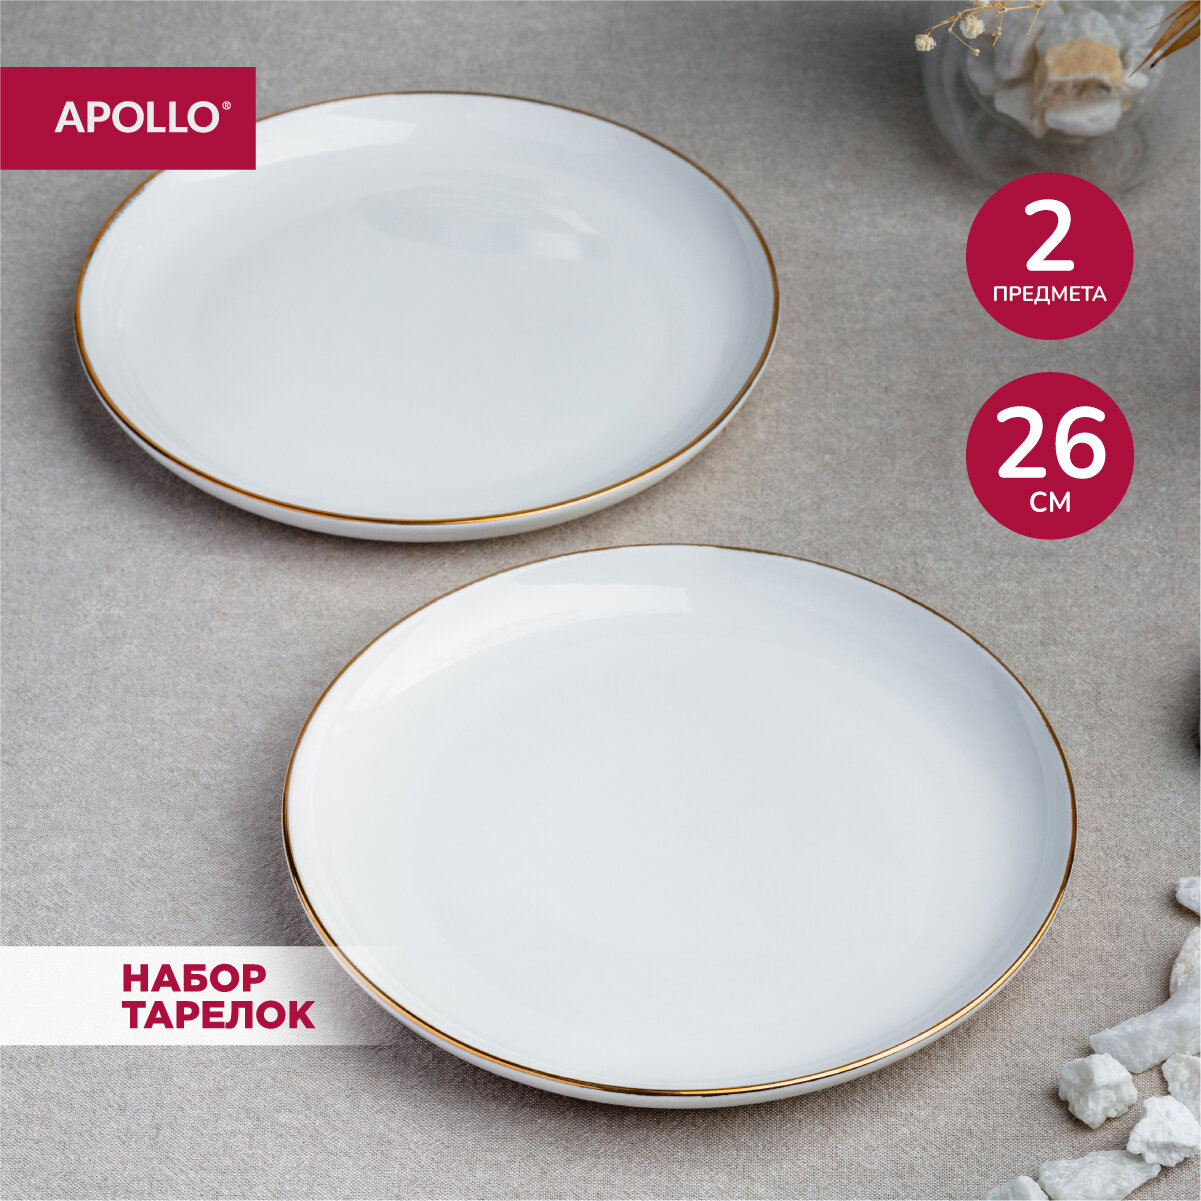 Тарелка фарфоровая обеденная, набор для сервировки стола APOLLO "Cintoro", 26 см, 2 предмета